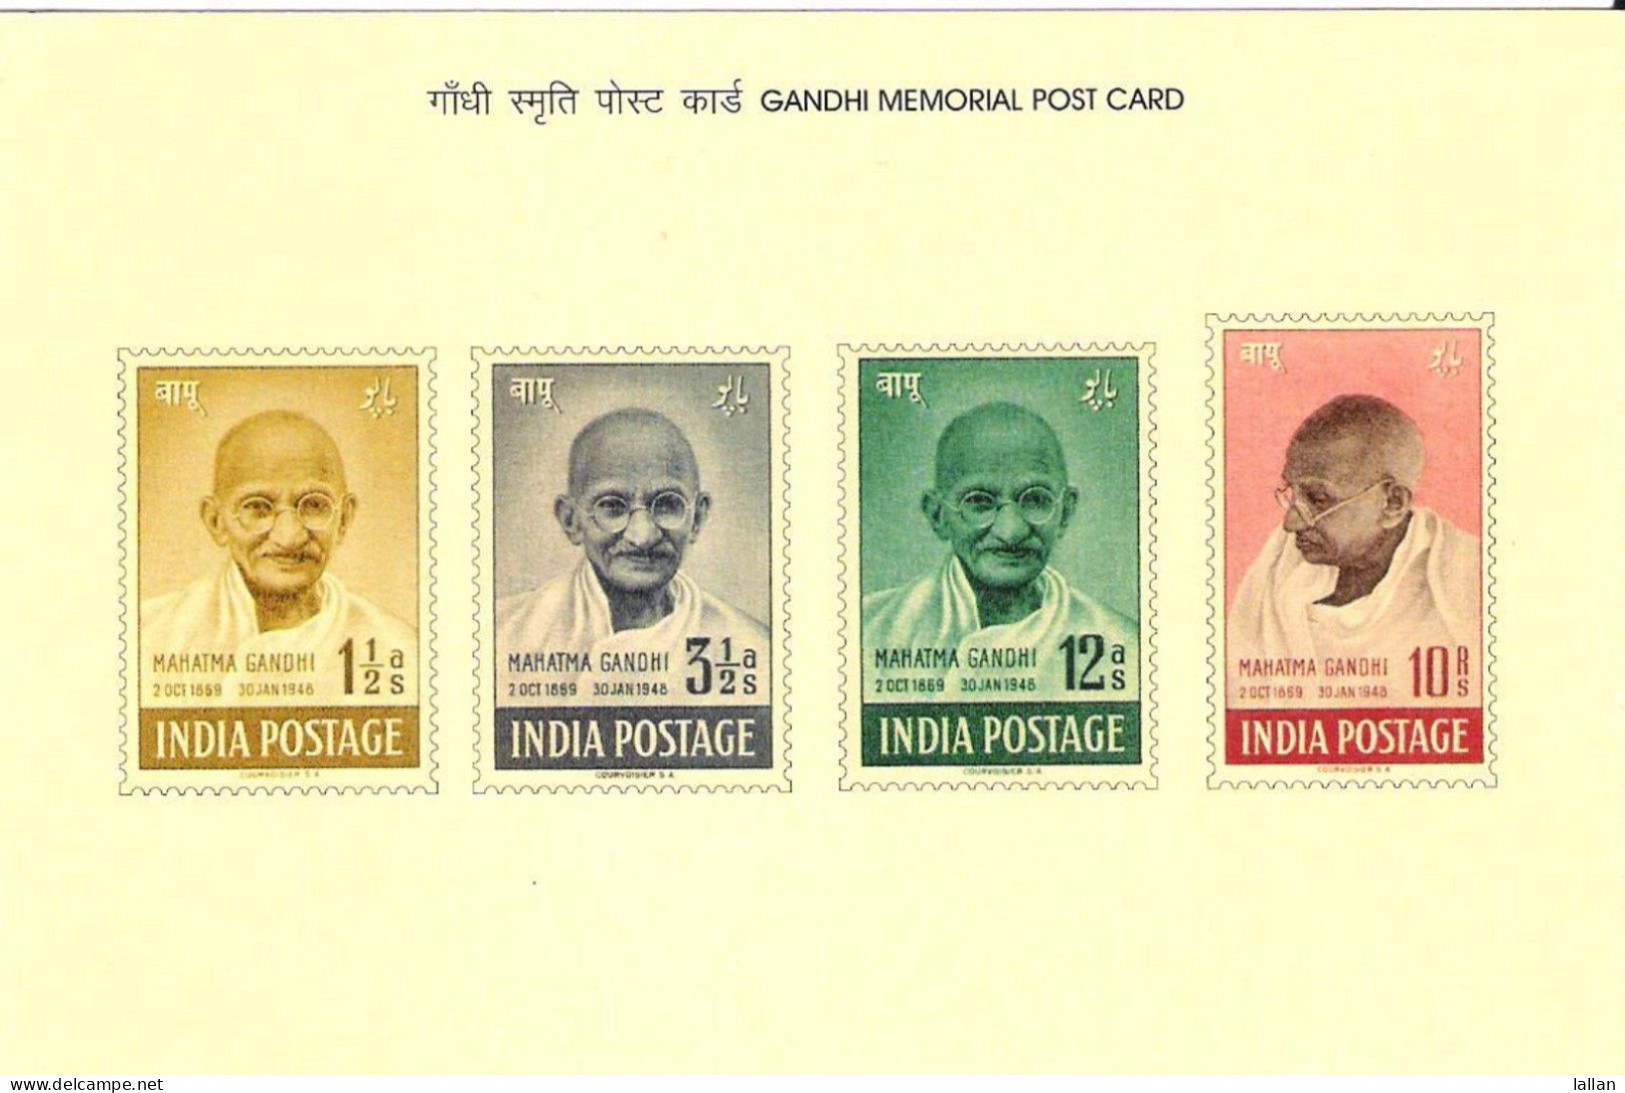 Gandhi Memorial Postcard, 2017 - Mahatma Gandhi